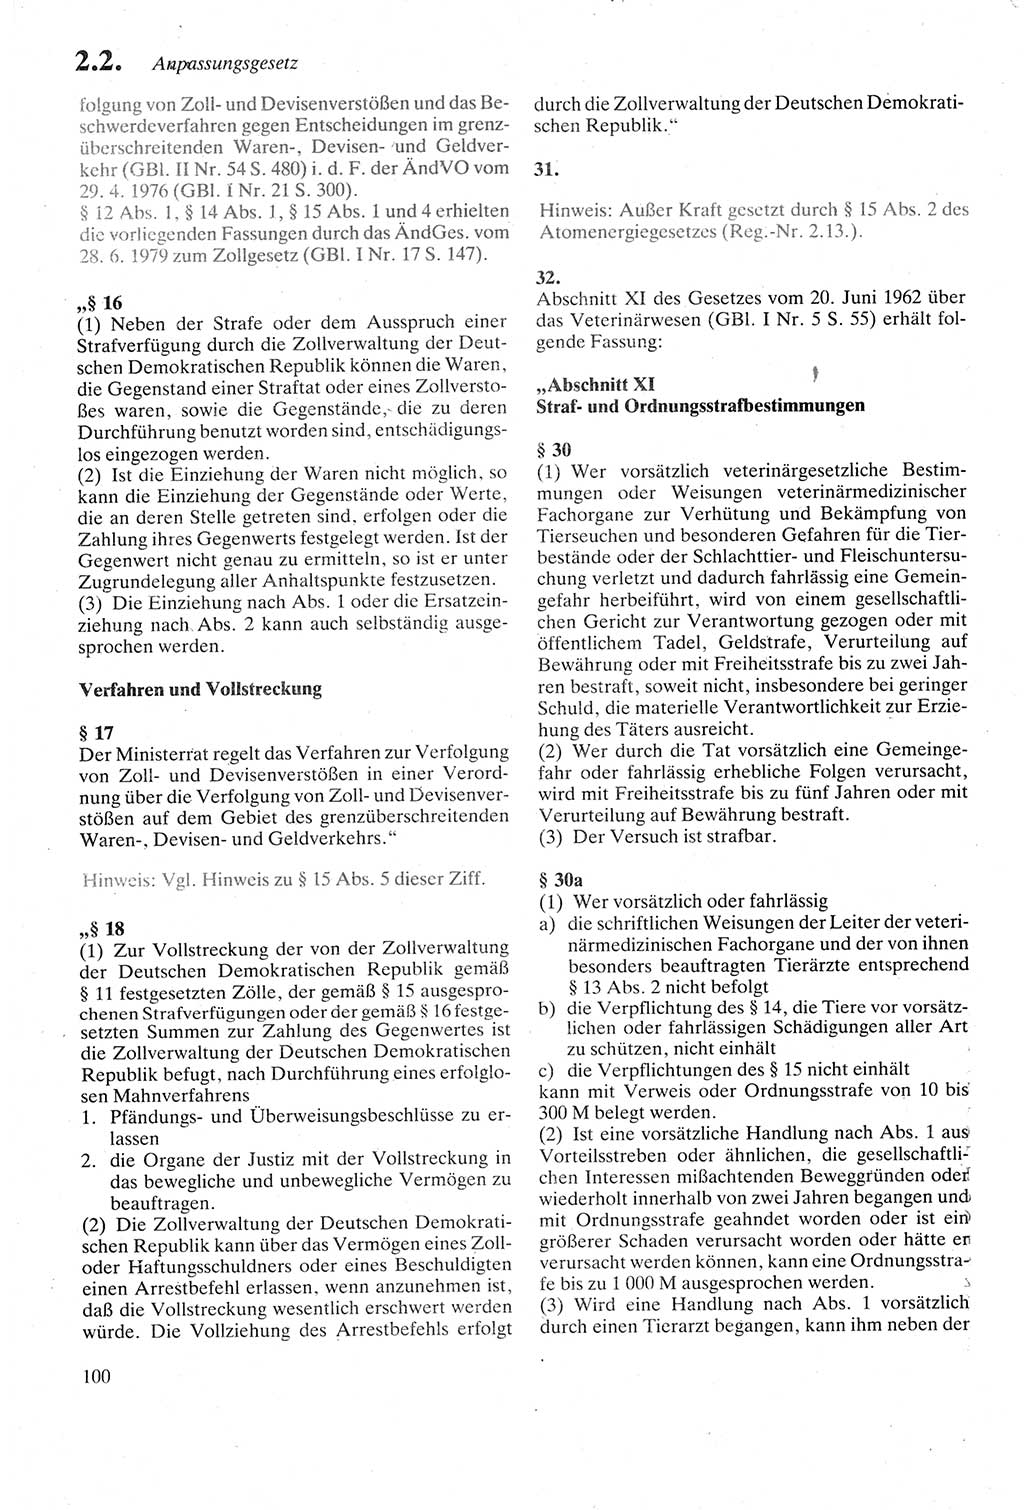 Strafgesetzbuch (StGB) der Deutschen Demokratischen Republik (DDR) sowie angrenzende Gesetze und Bestimmungen 1979, Seite 100 (StGB DDR Ges. Best. 1979, S. 100)